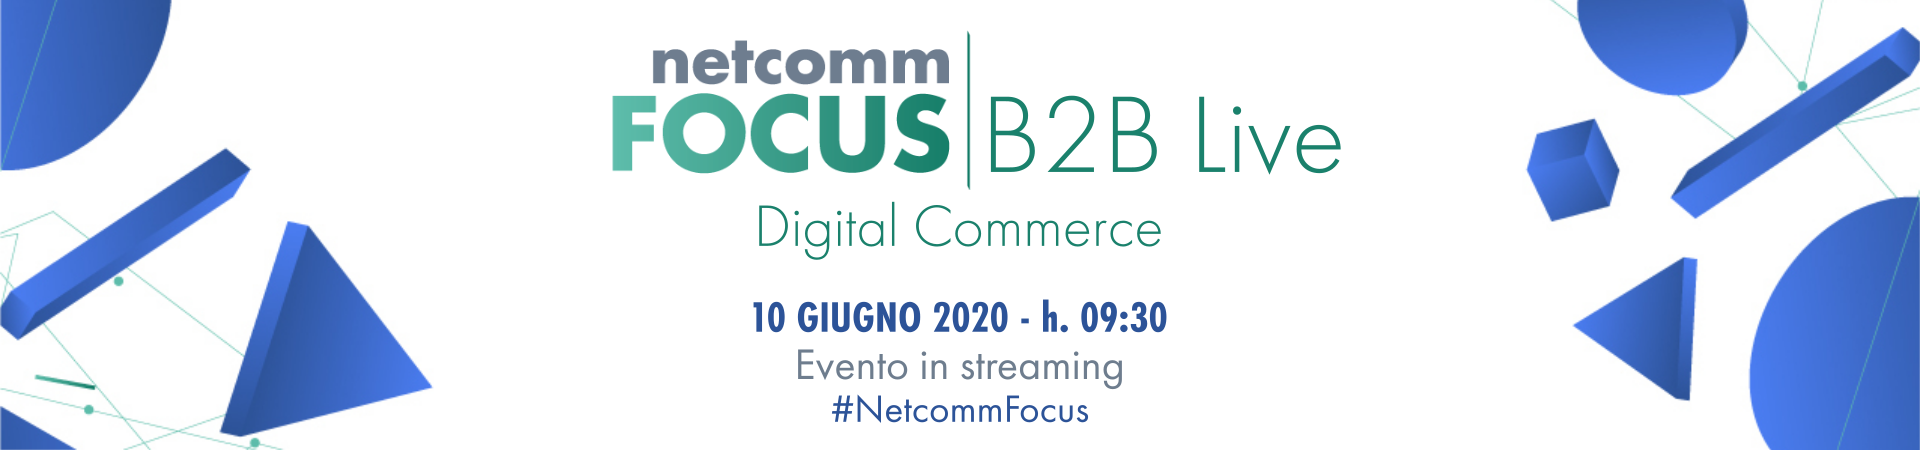 Netcomm FOCUS Live - B2B Digital Commerce 2020